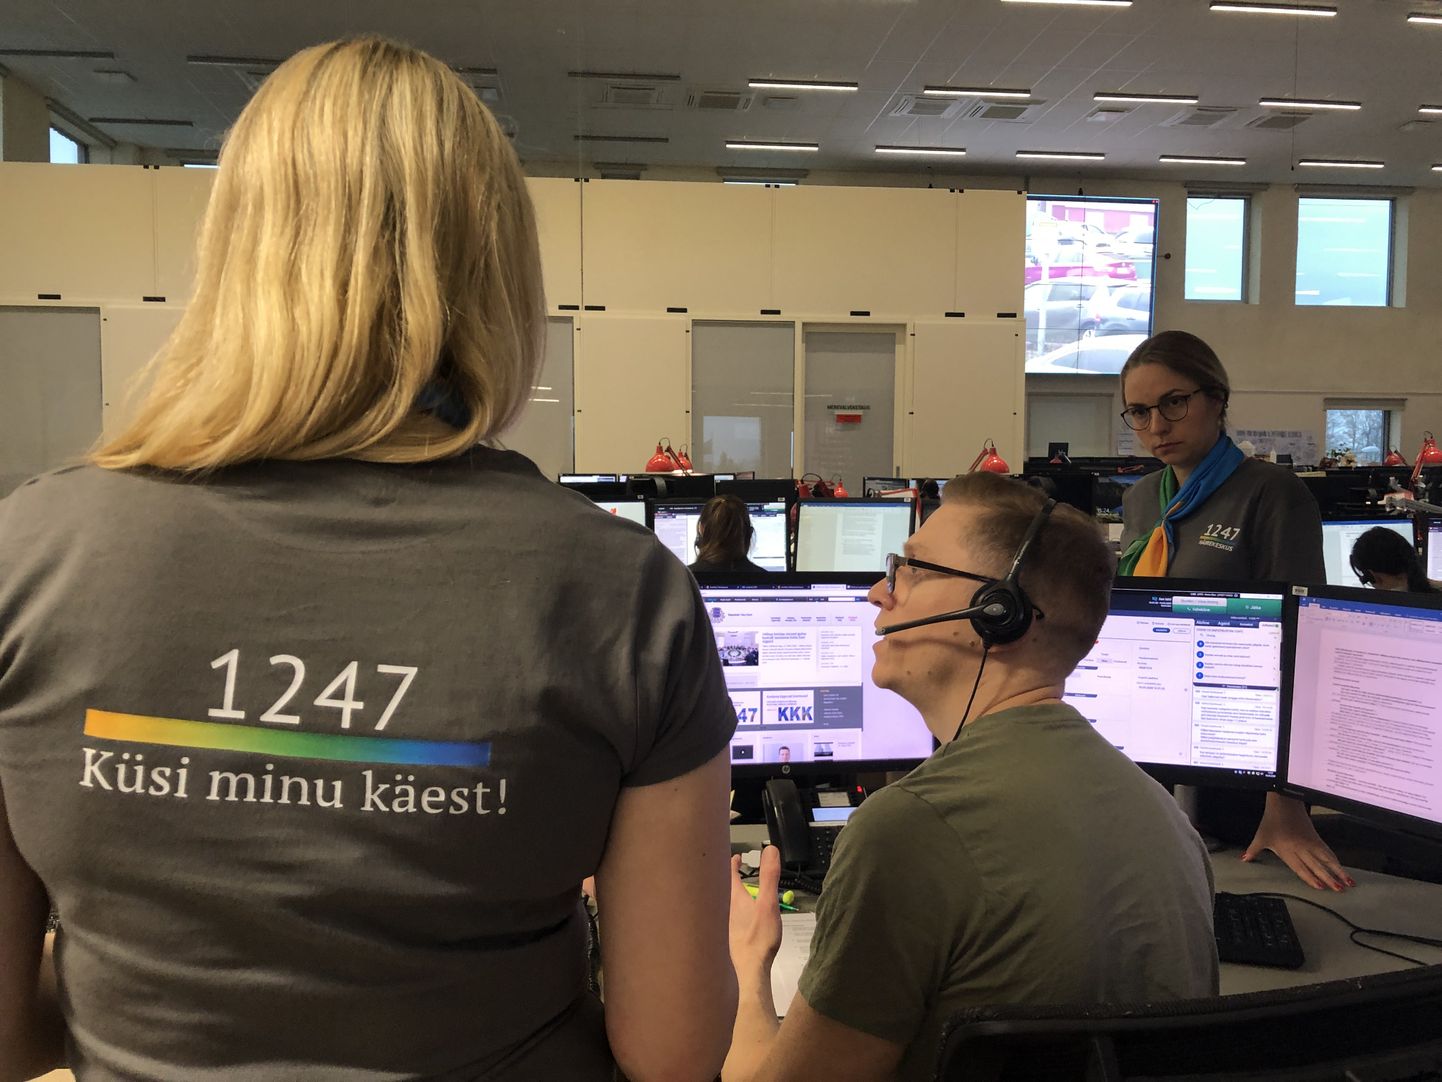 Häirekeskuse peadirektori Kätlin Alvela sõnul võib tänaseks kindlalt öelda, et numbri 1247 avamine oli ainuõige otsus.